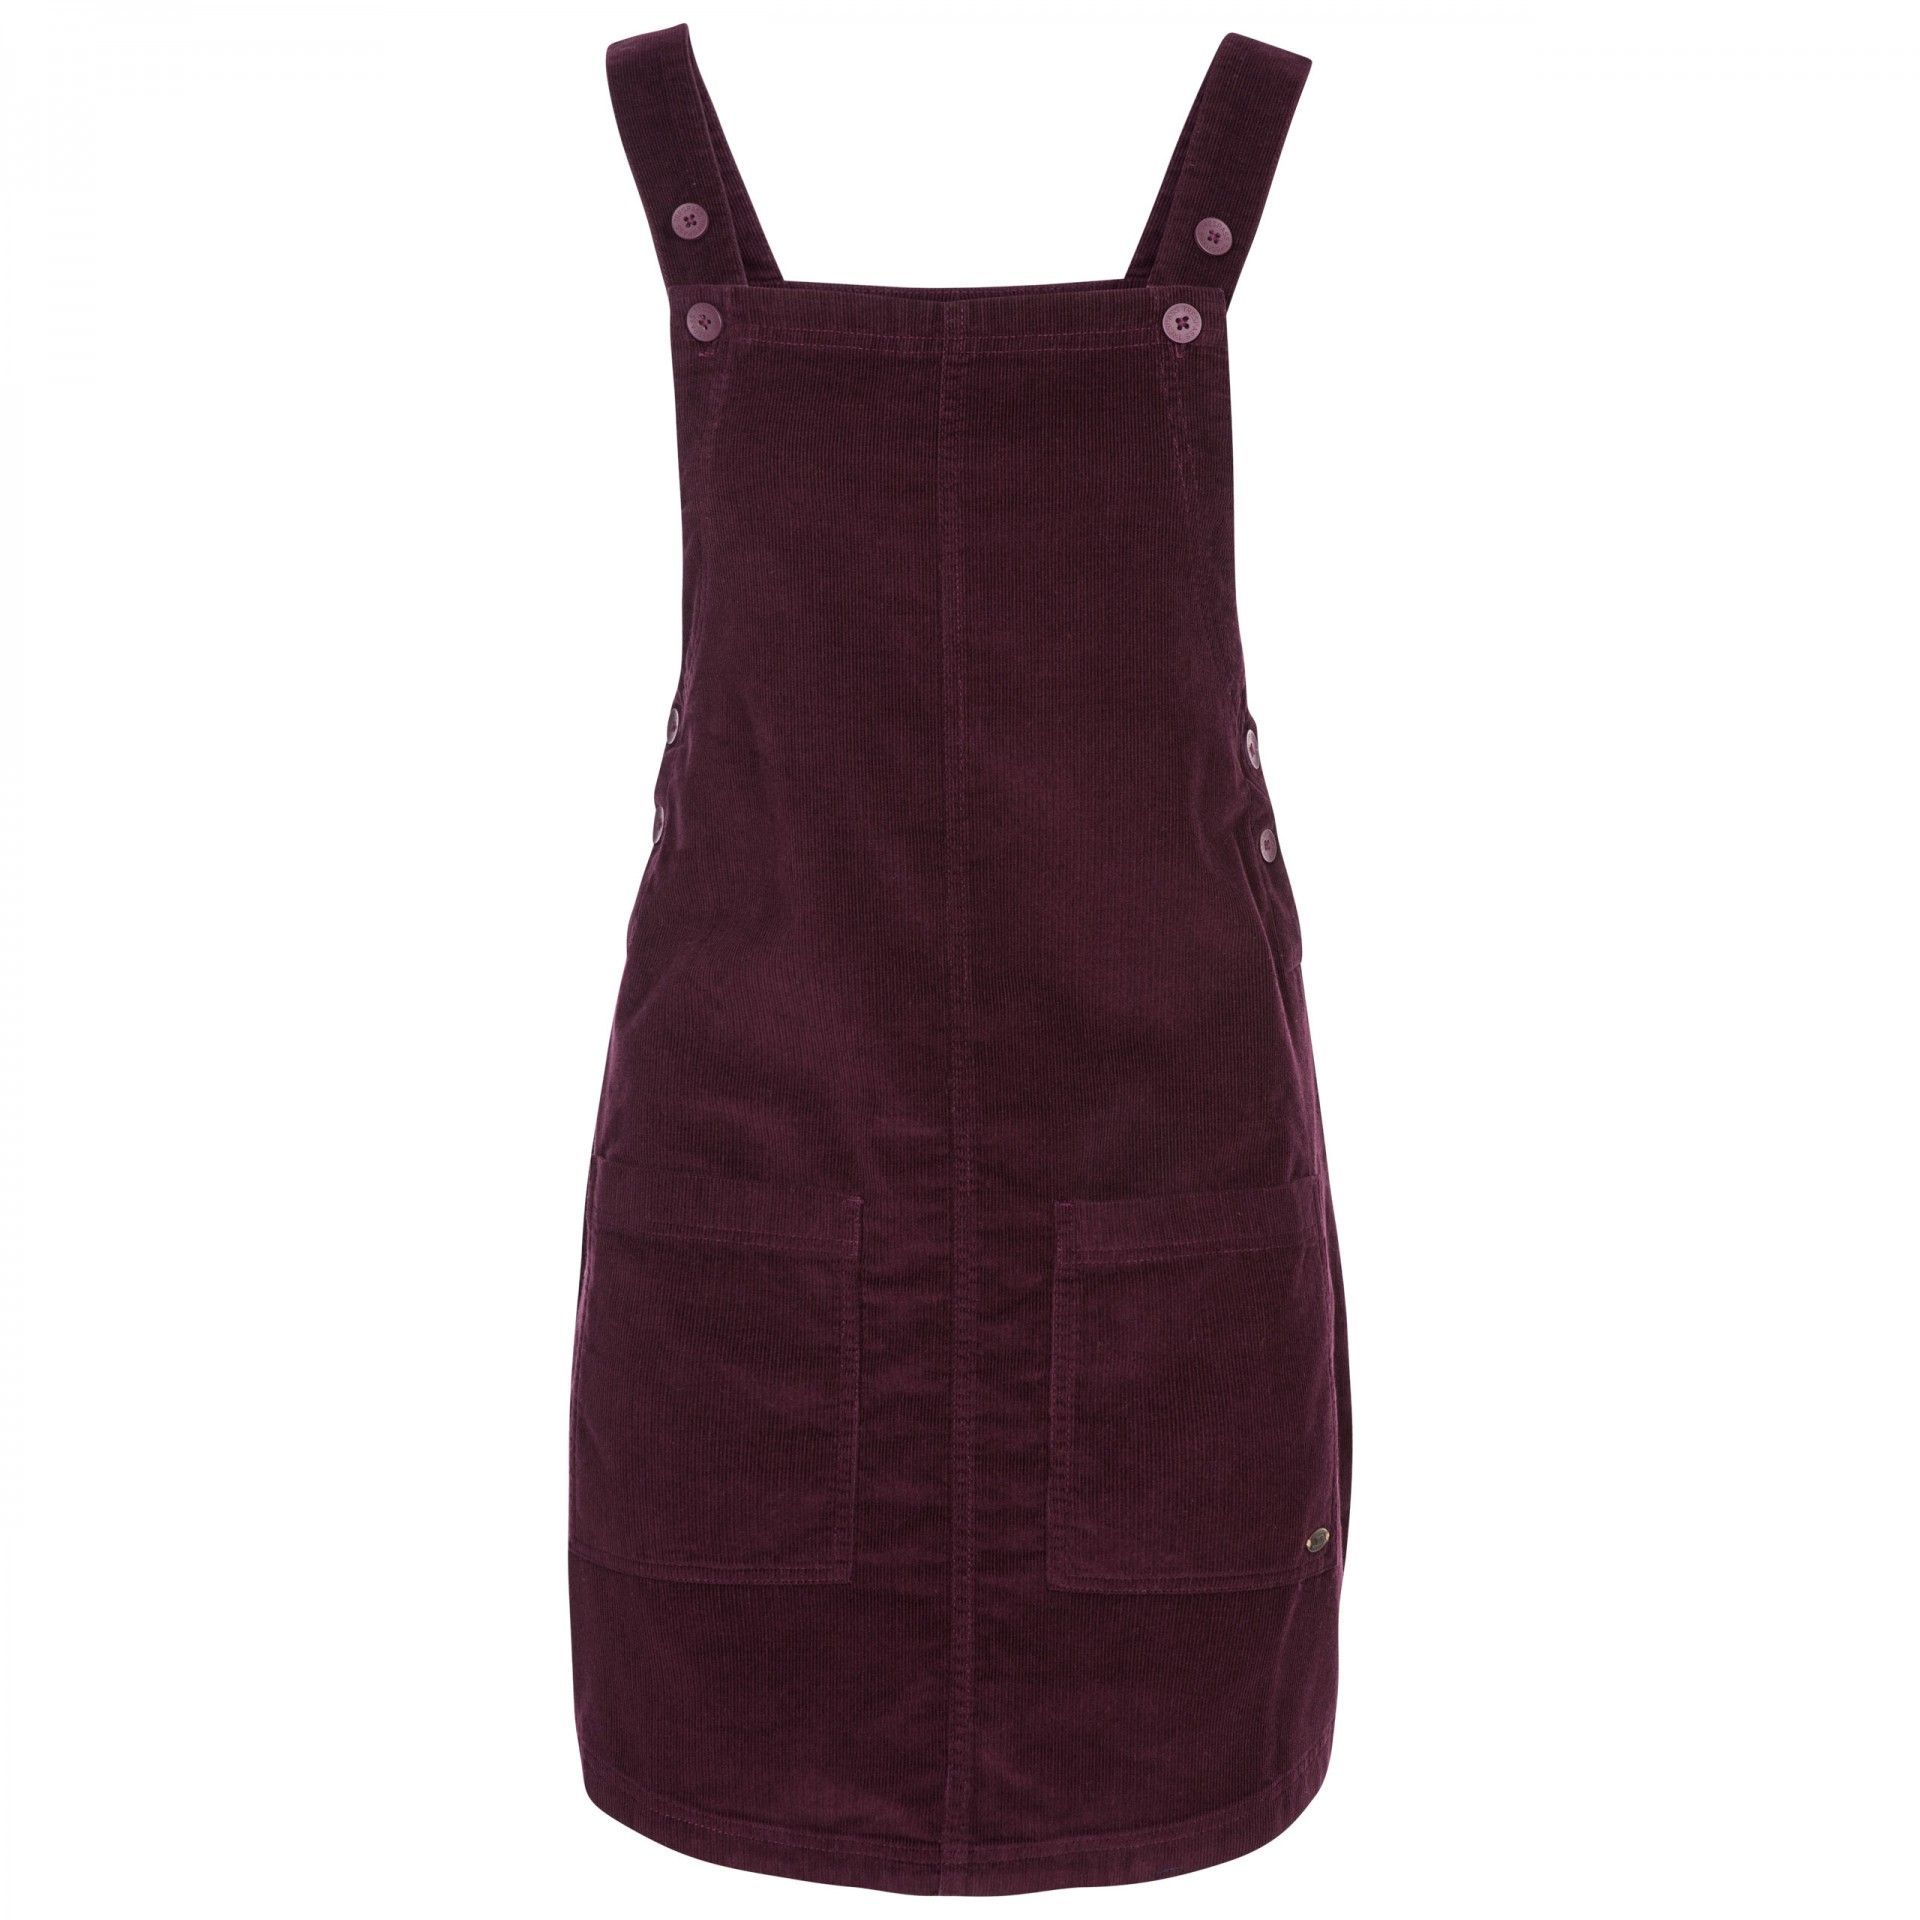 Material: 100% cotton. Pinafore dress. Fine corduroy. Button fastening straps. 2 front patch pockets. Woven fabric. Bust size to fit: (XXS): 78cm, (XS): 81cm, (S): 86cm, (M): 91.4cm, (L): 96.5cm, (XL): 101.5cm, (XXL): 106.5cm.